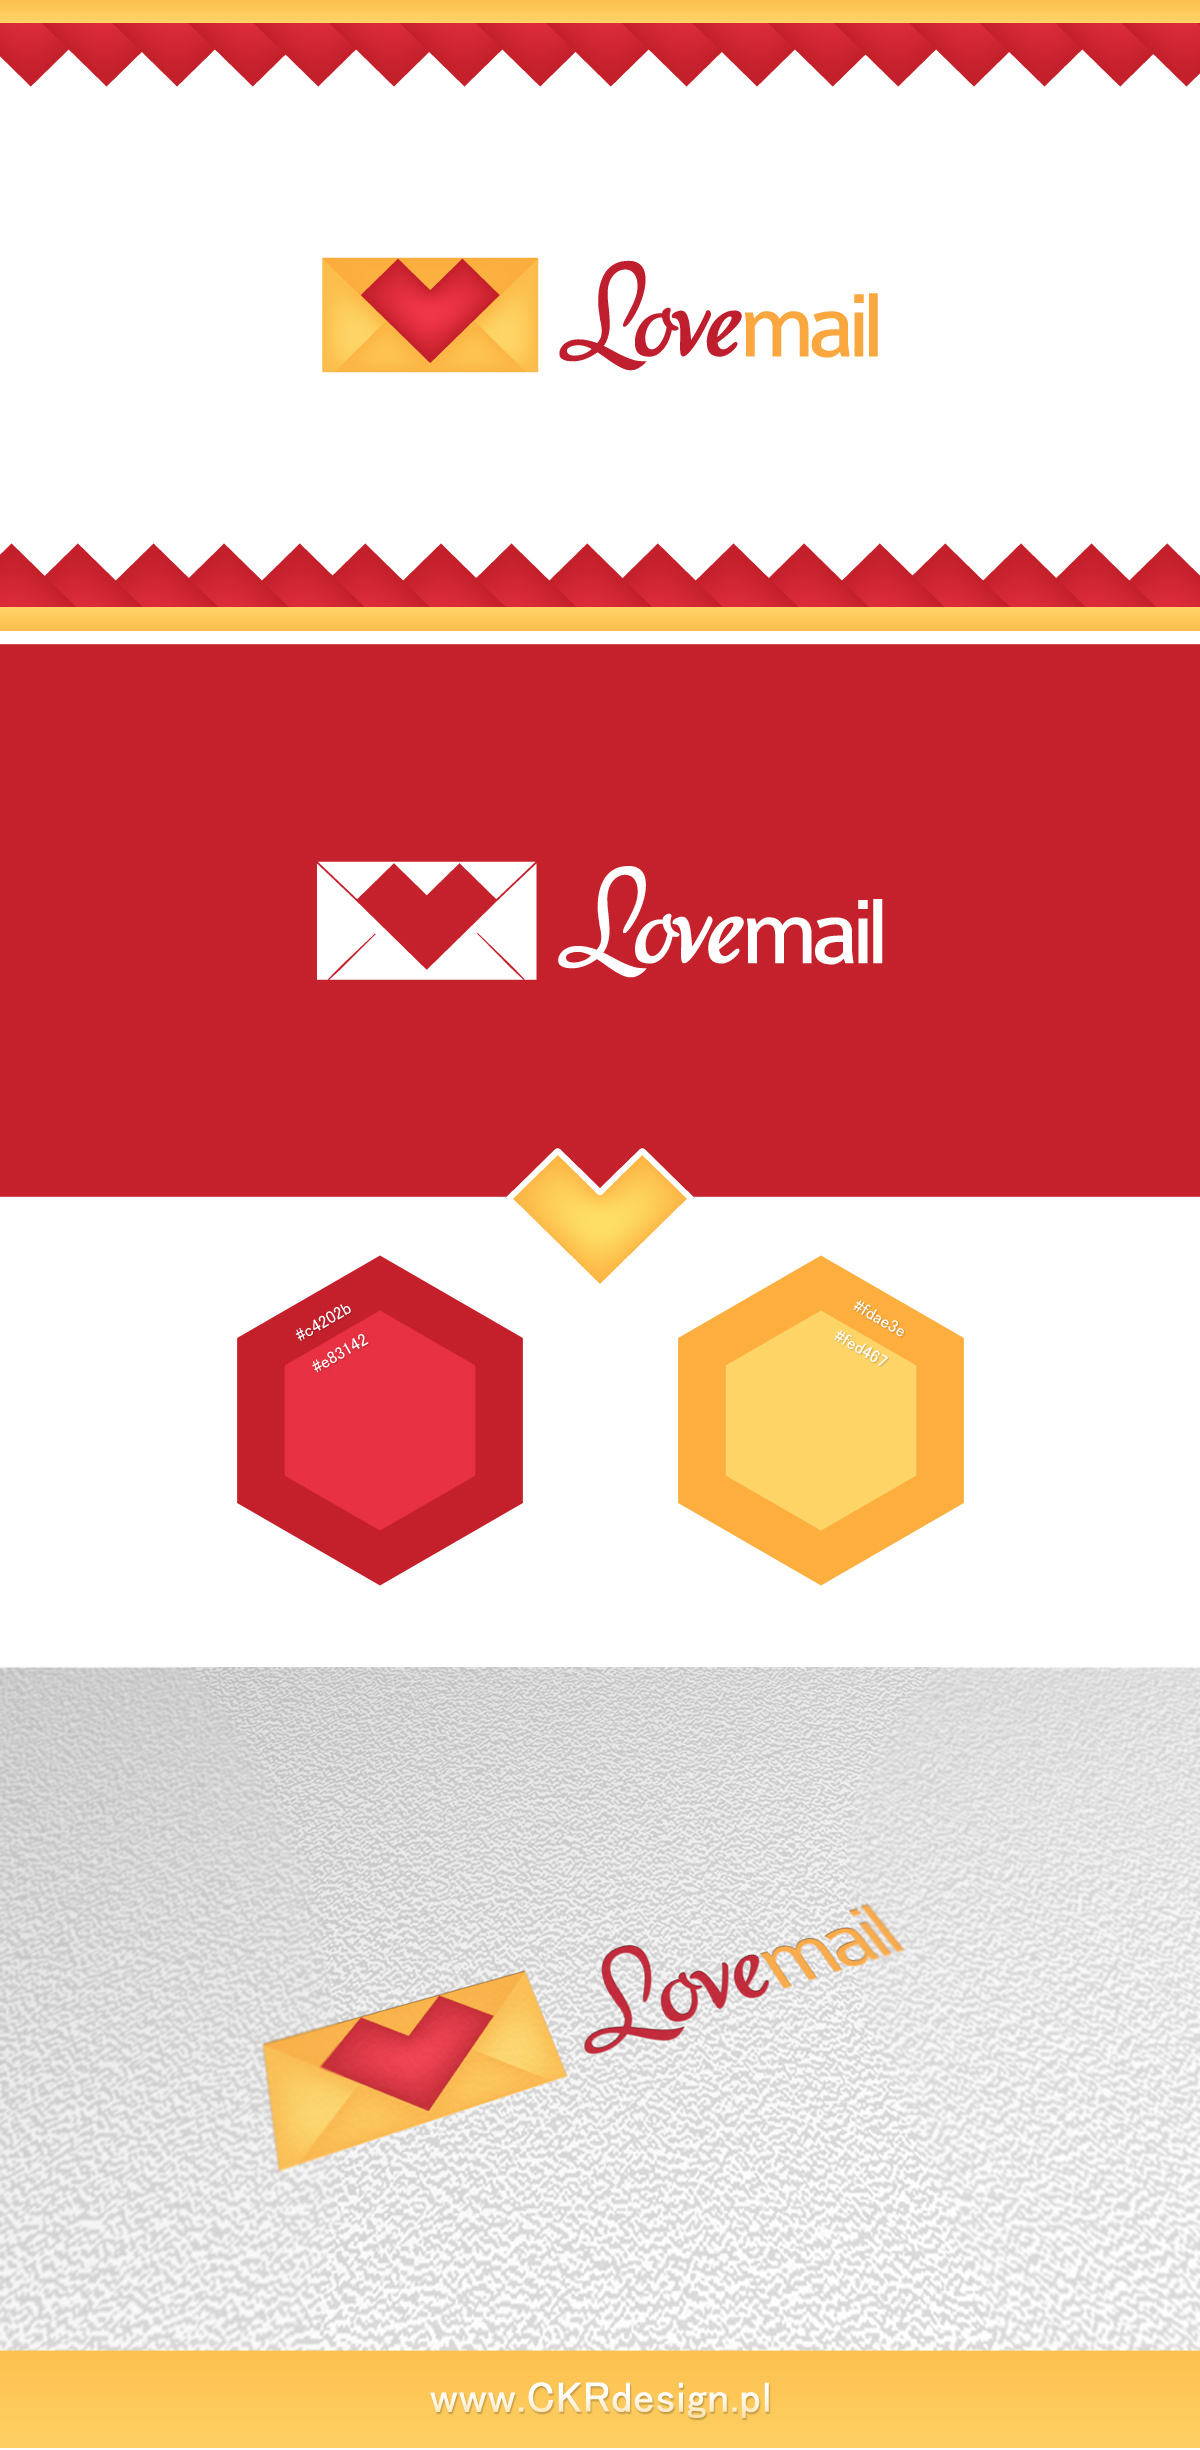 LoveMail - Logotype